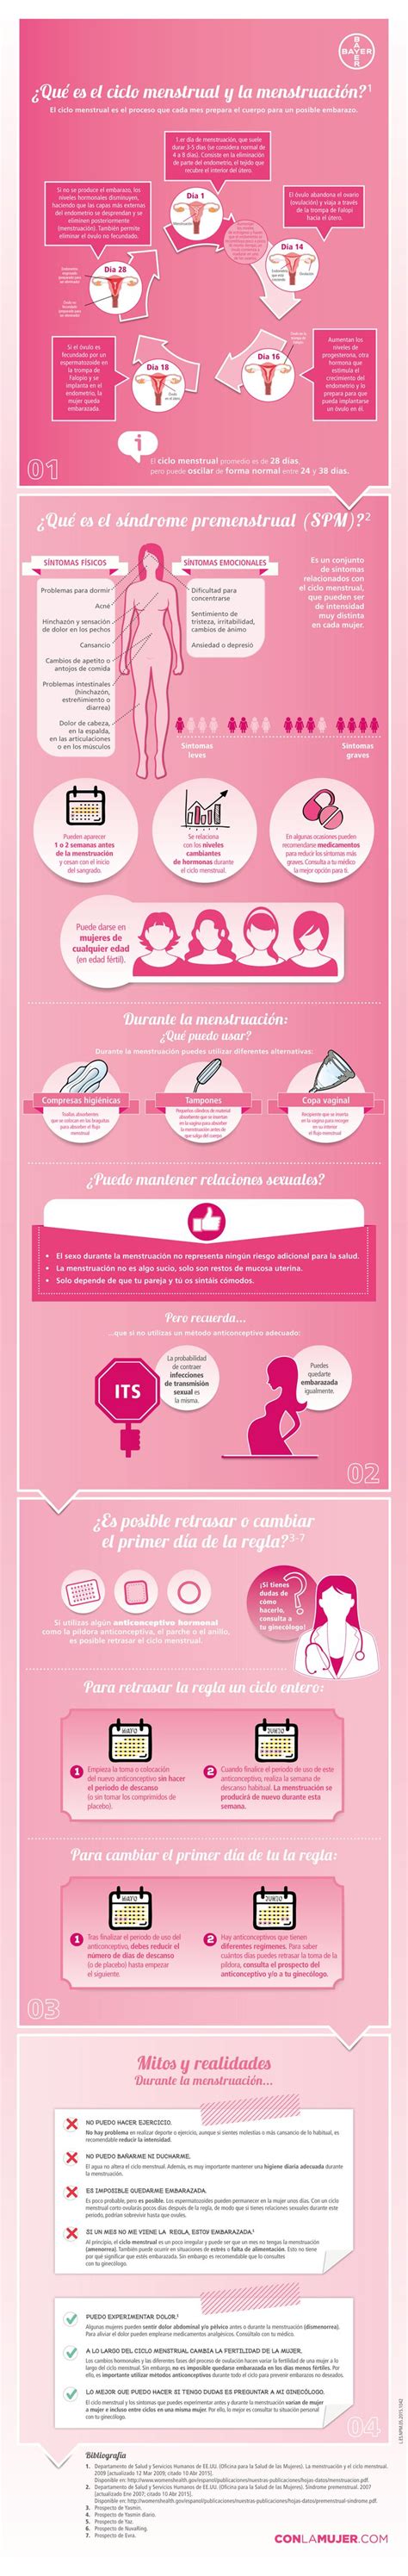 Más de 25 ideas increíbles sobre Primer embarazo en Pinterest